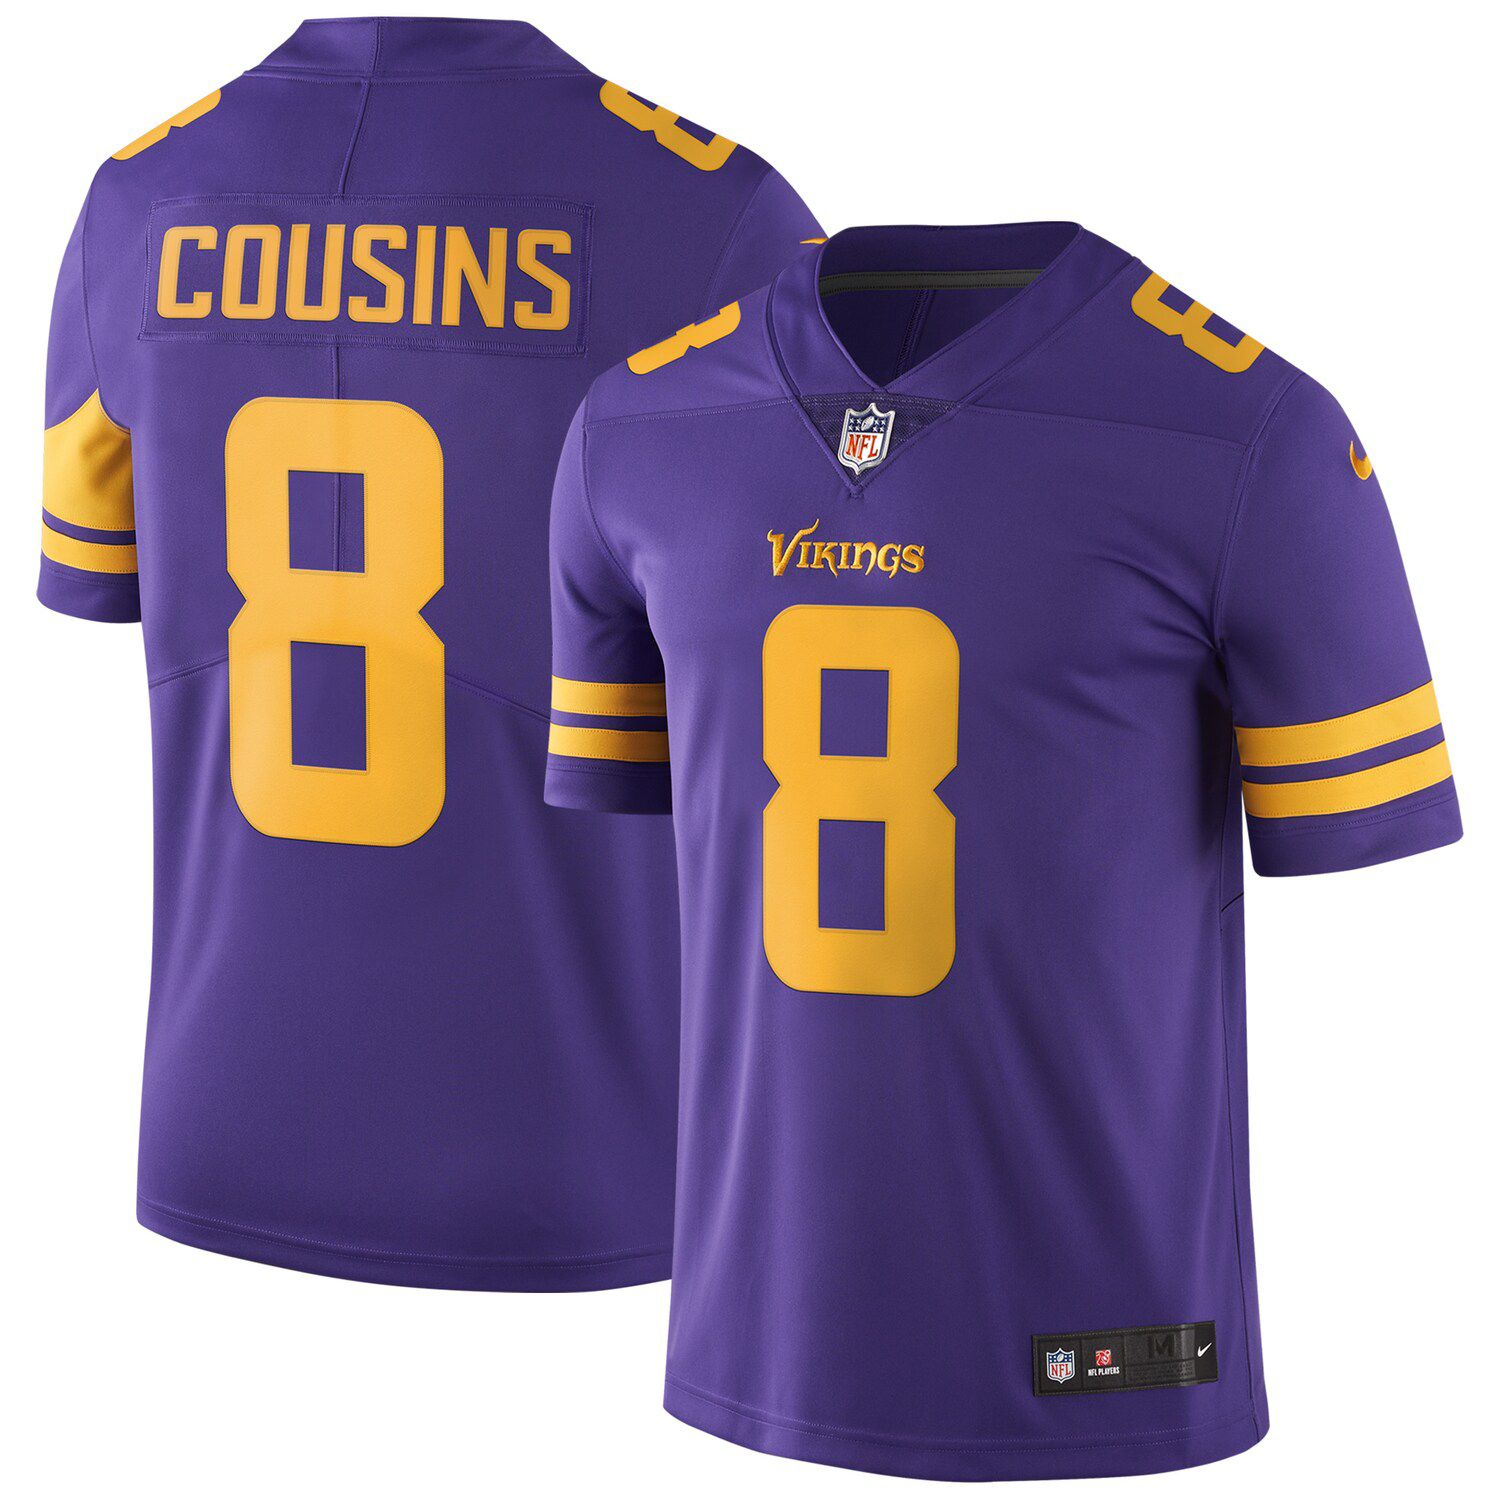 Minnesota Vikings NFL color rush jersey